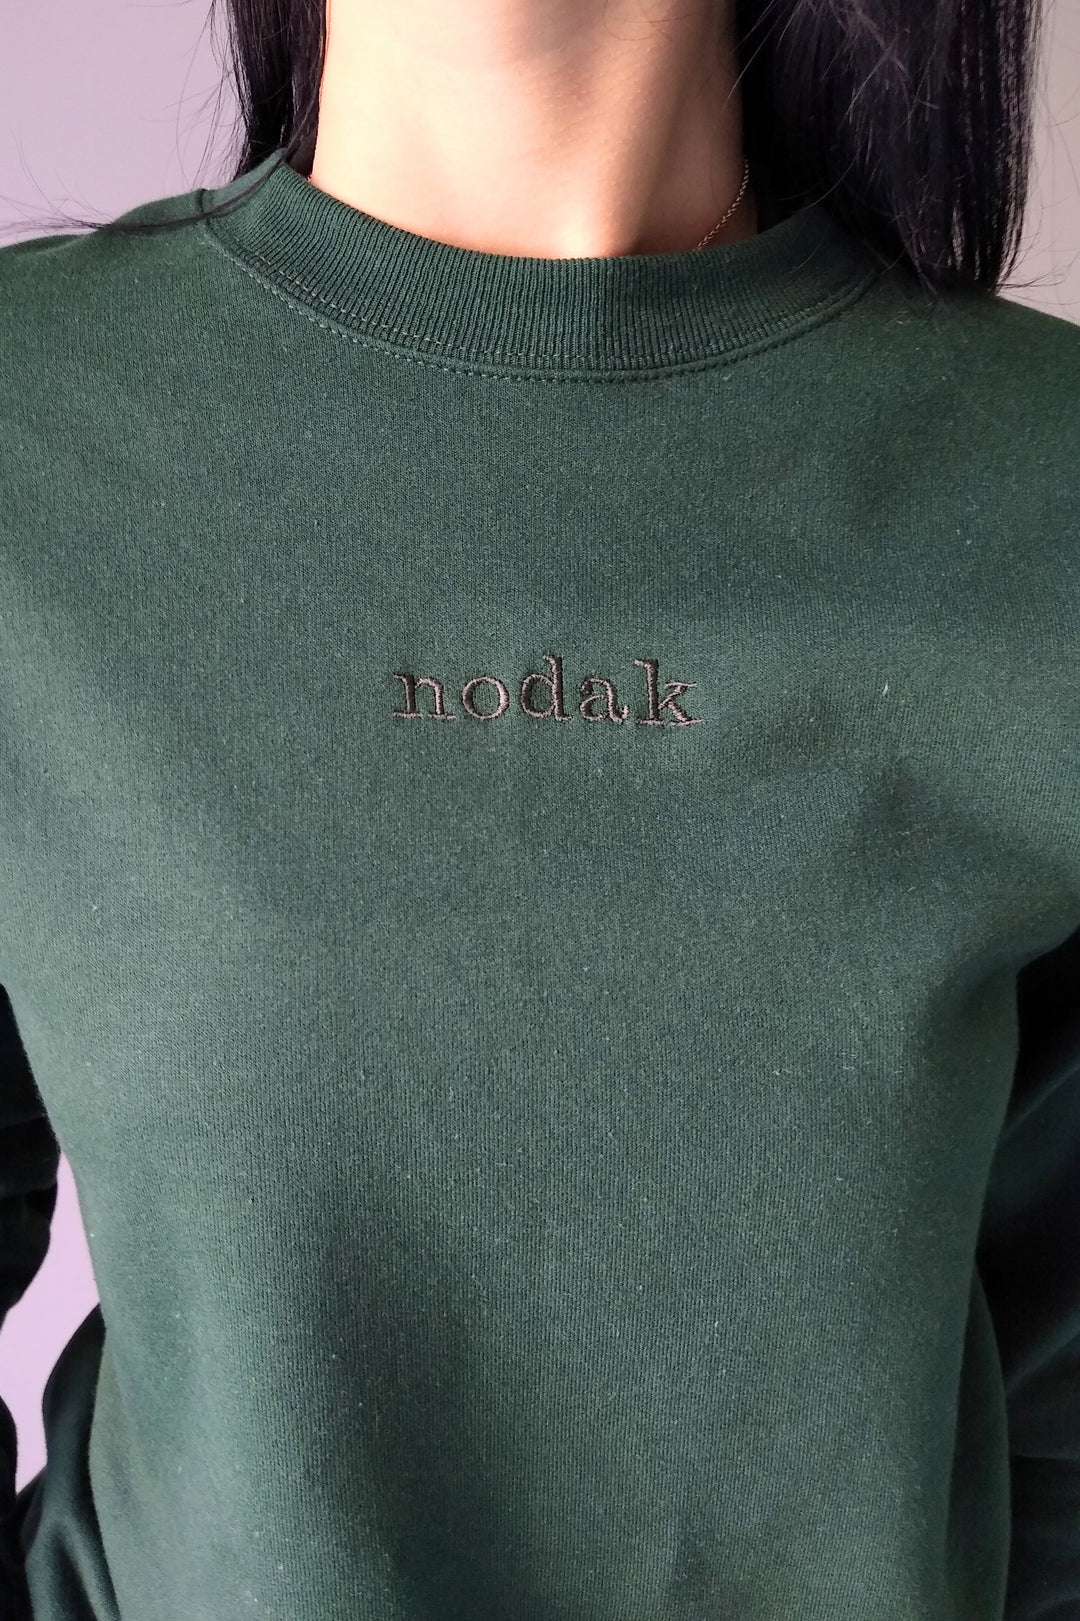 Nodak Forest Green Embroidered Crewneck Sweatshirt